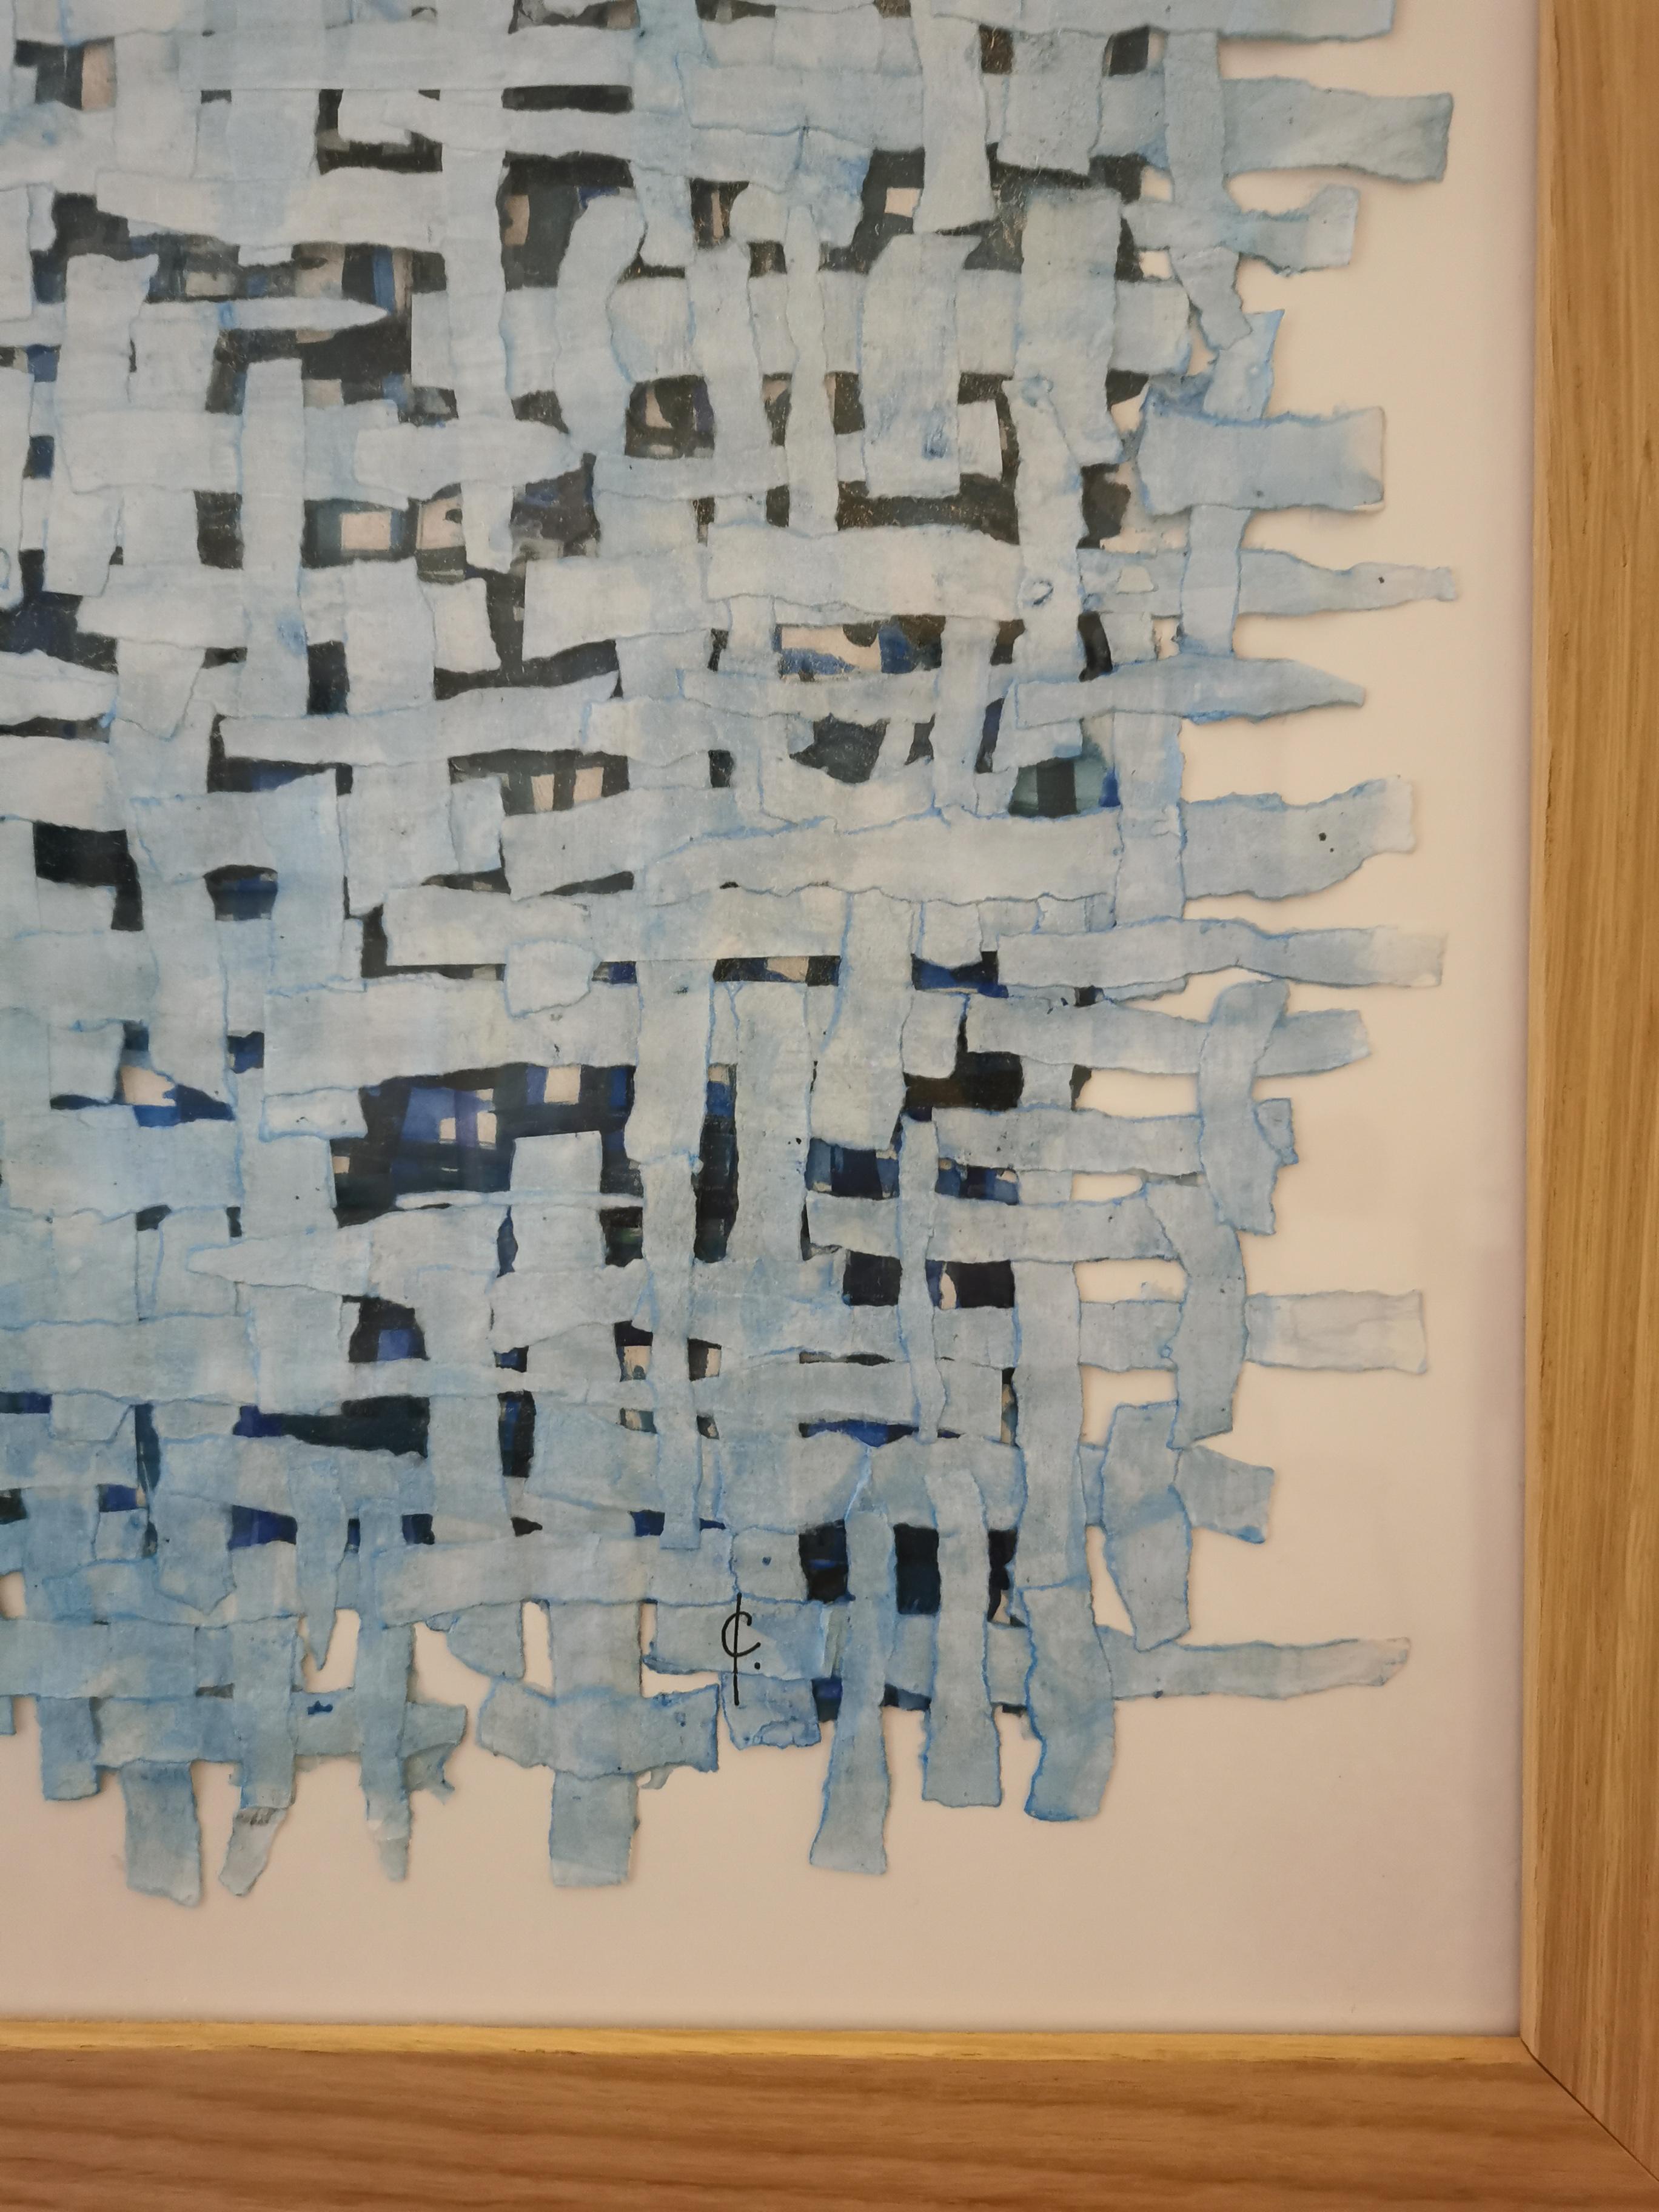 Grand tissage papier de Cécile Morin-Verdier, technique mixte incluant papier Japon déchiré, aquarelle et acrylique, sur grande toile encadrée sur mesure .
Le papier est au centre de la démarche artistique de Cécile Morin-Verdier.
Elle utilise de